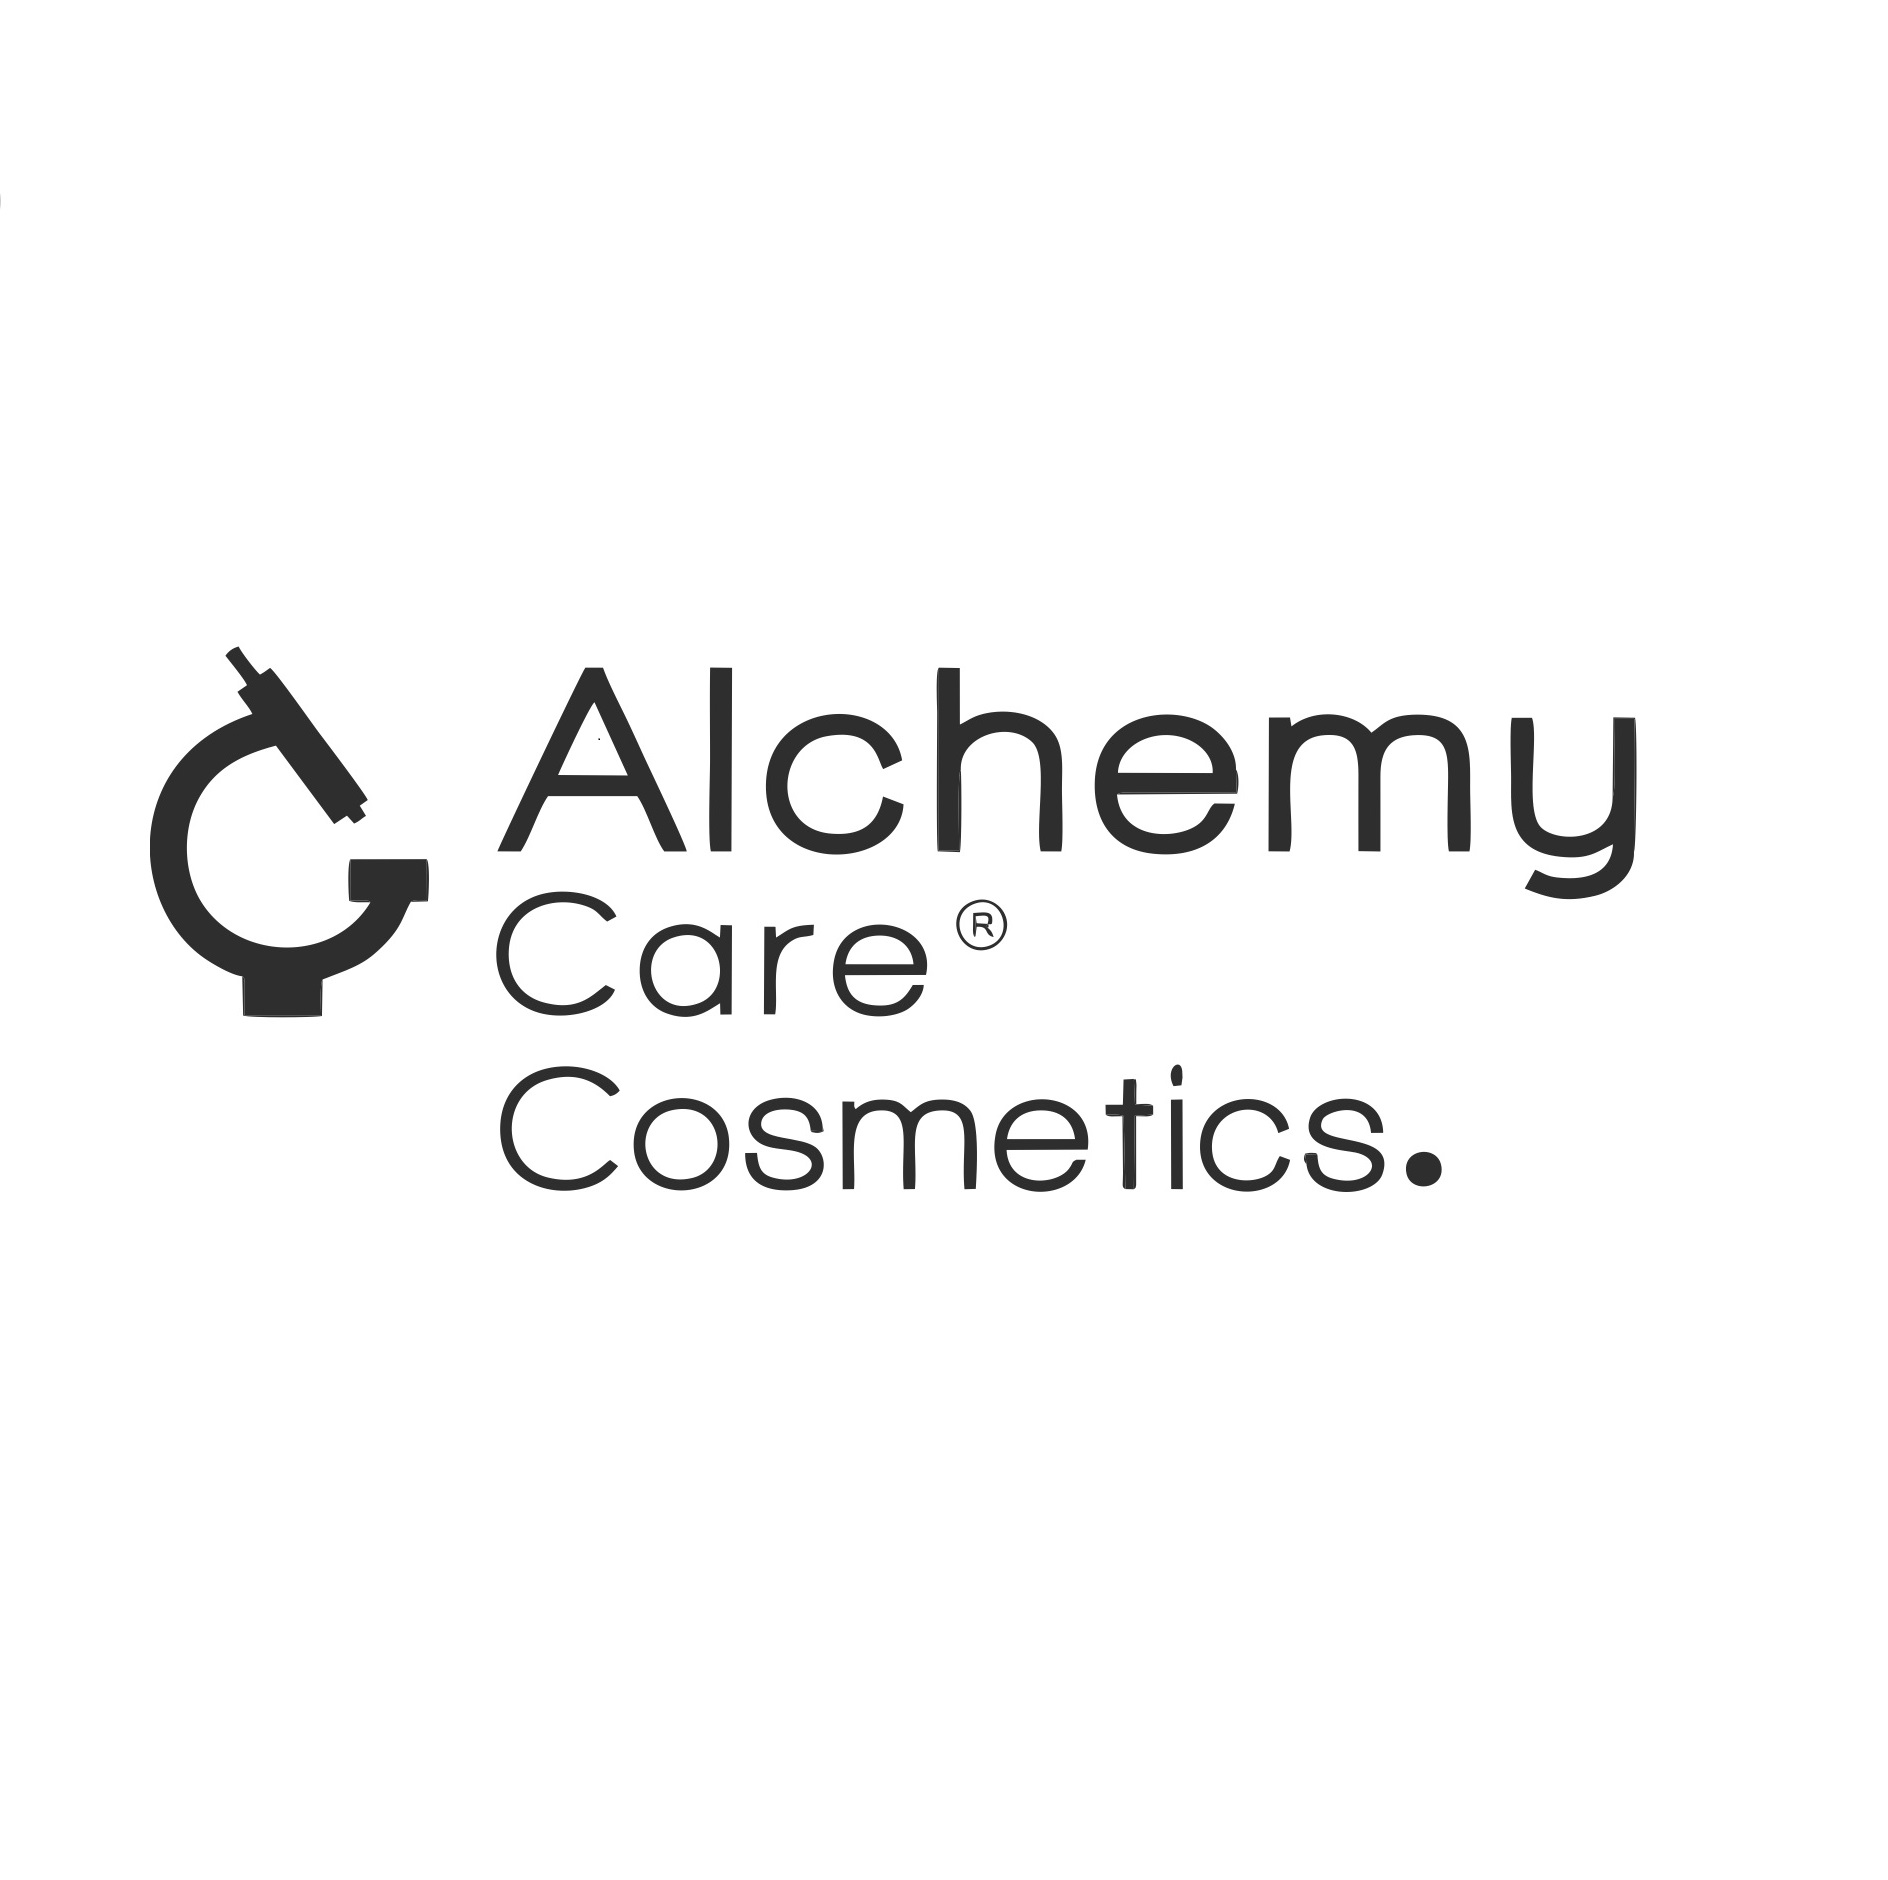 alchemycarecosmetics